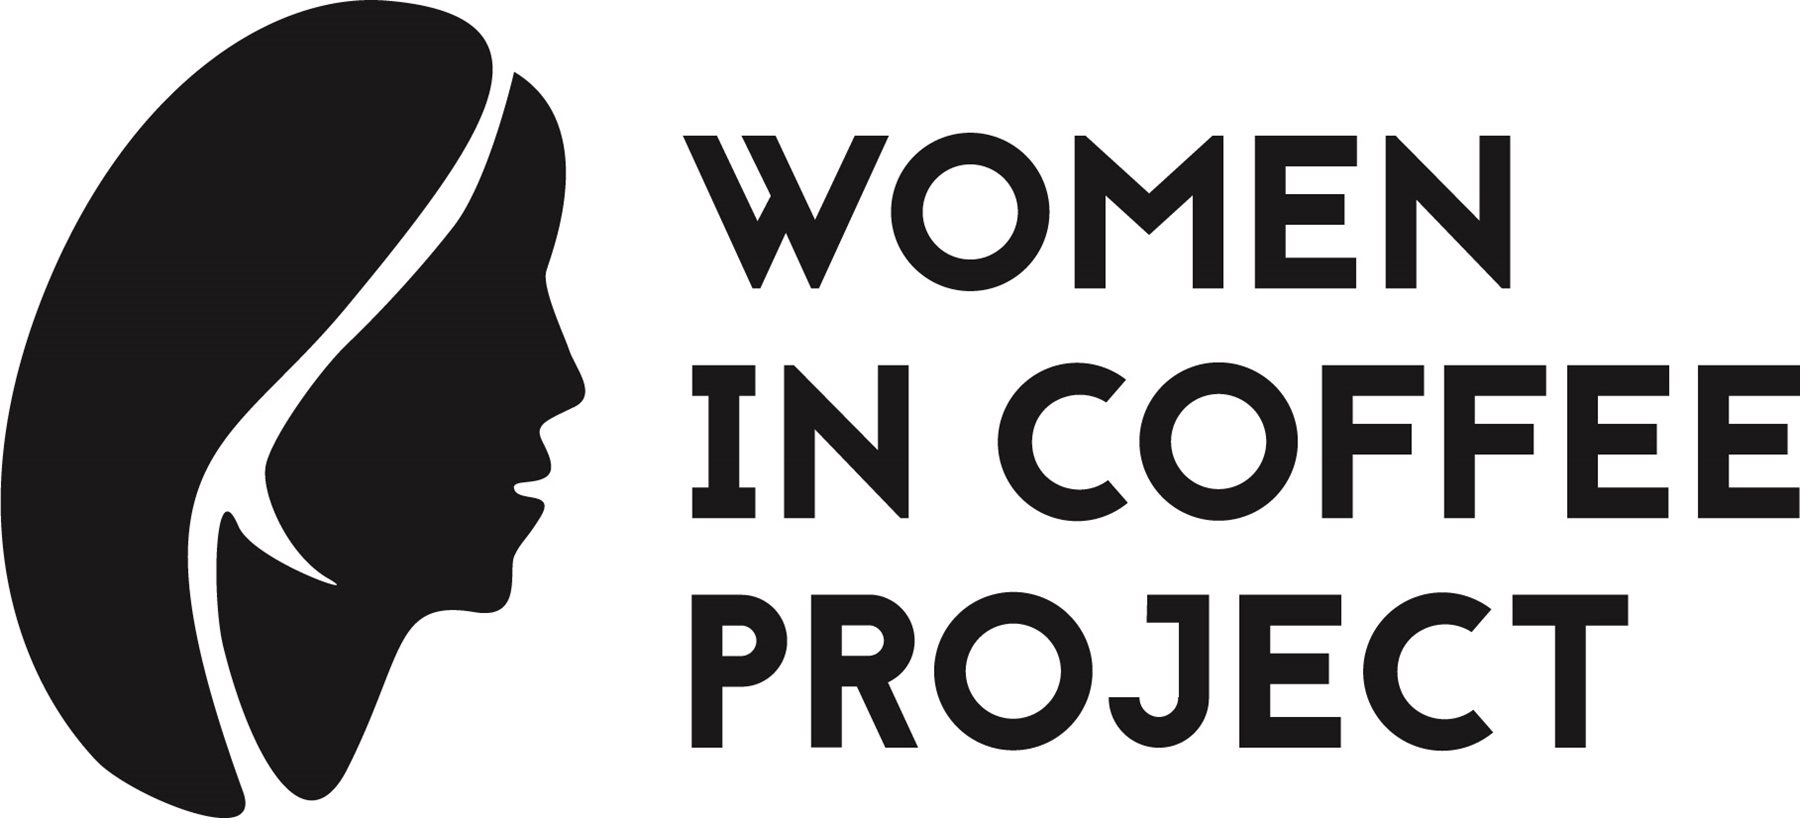 Women in Coffee Project